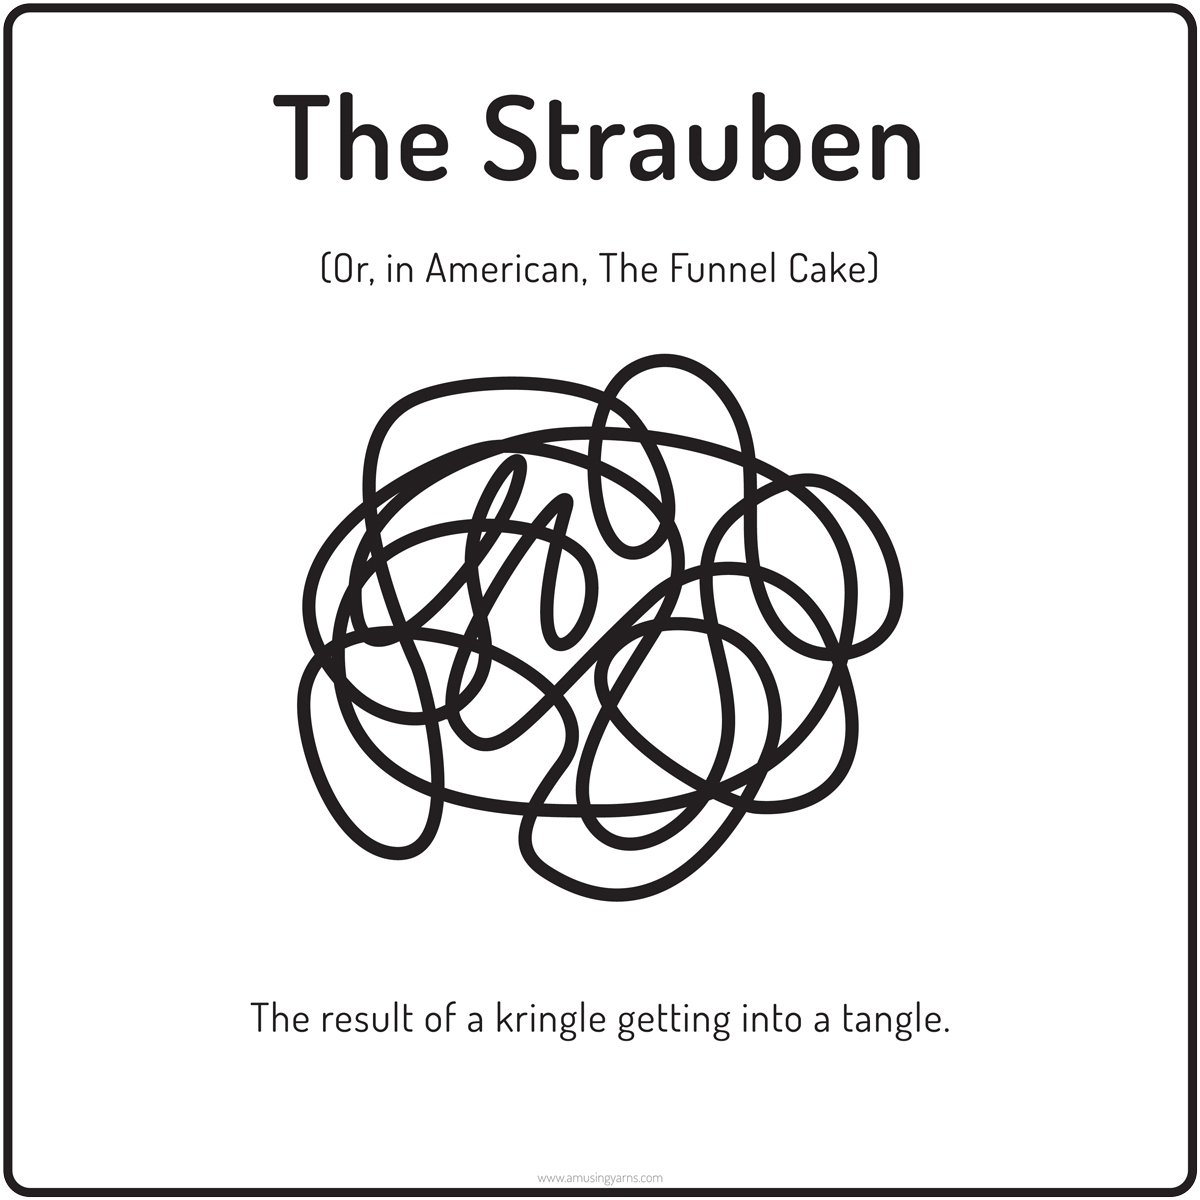 The Strauben